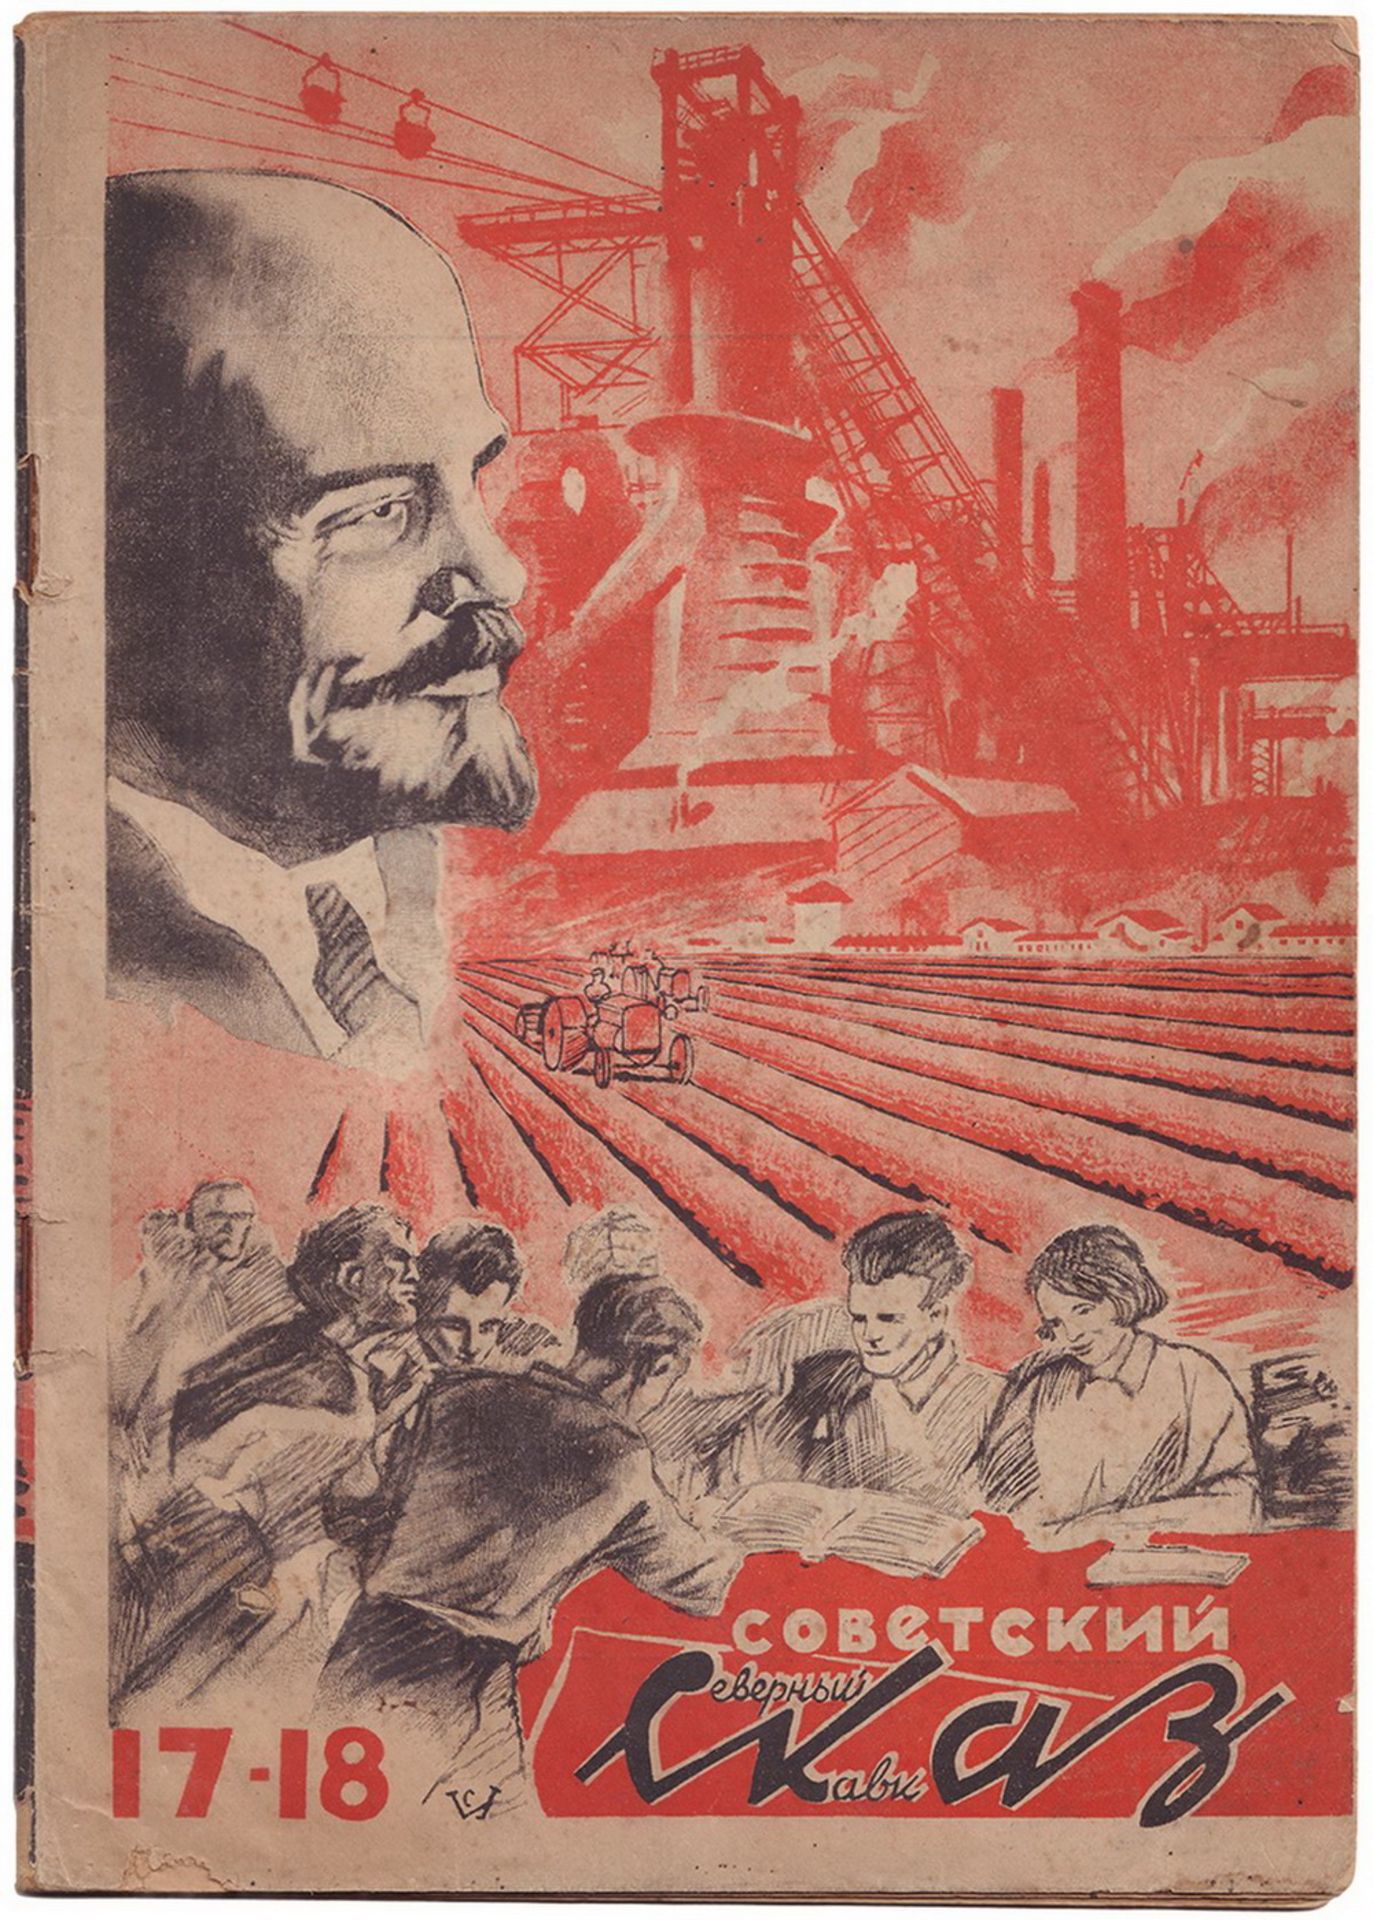 Soviet North Caucasus: Magazine. Issue 17-18. Rostov-on-Don, 1930-1931. - [1], 64, [1] pp.; ill.; 25